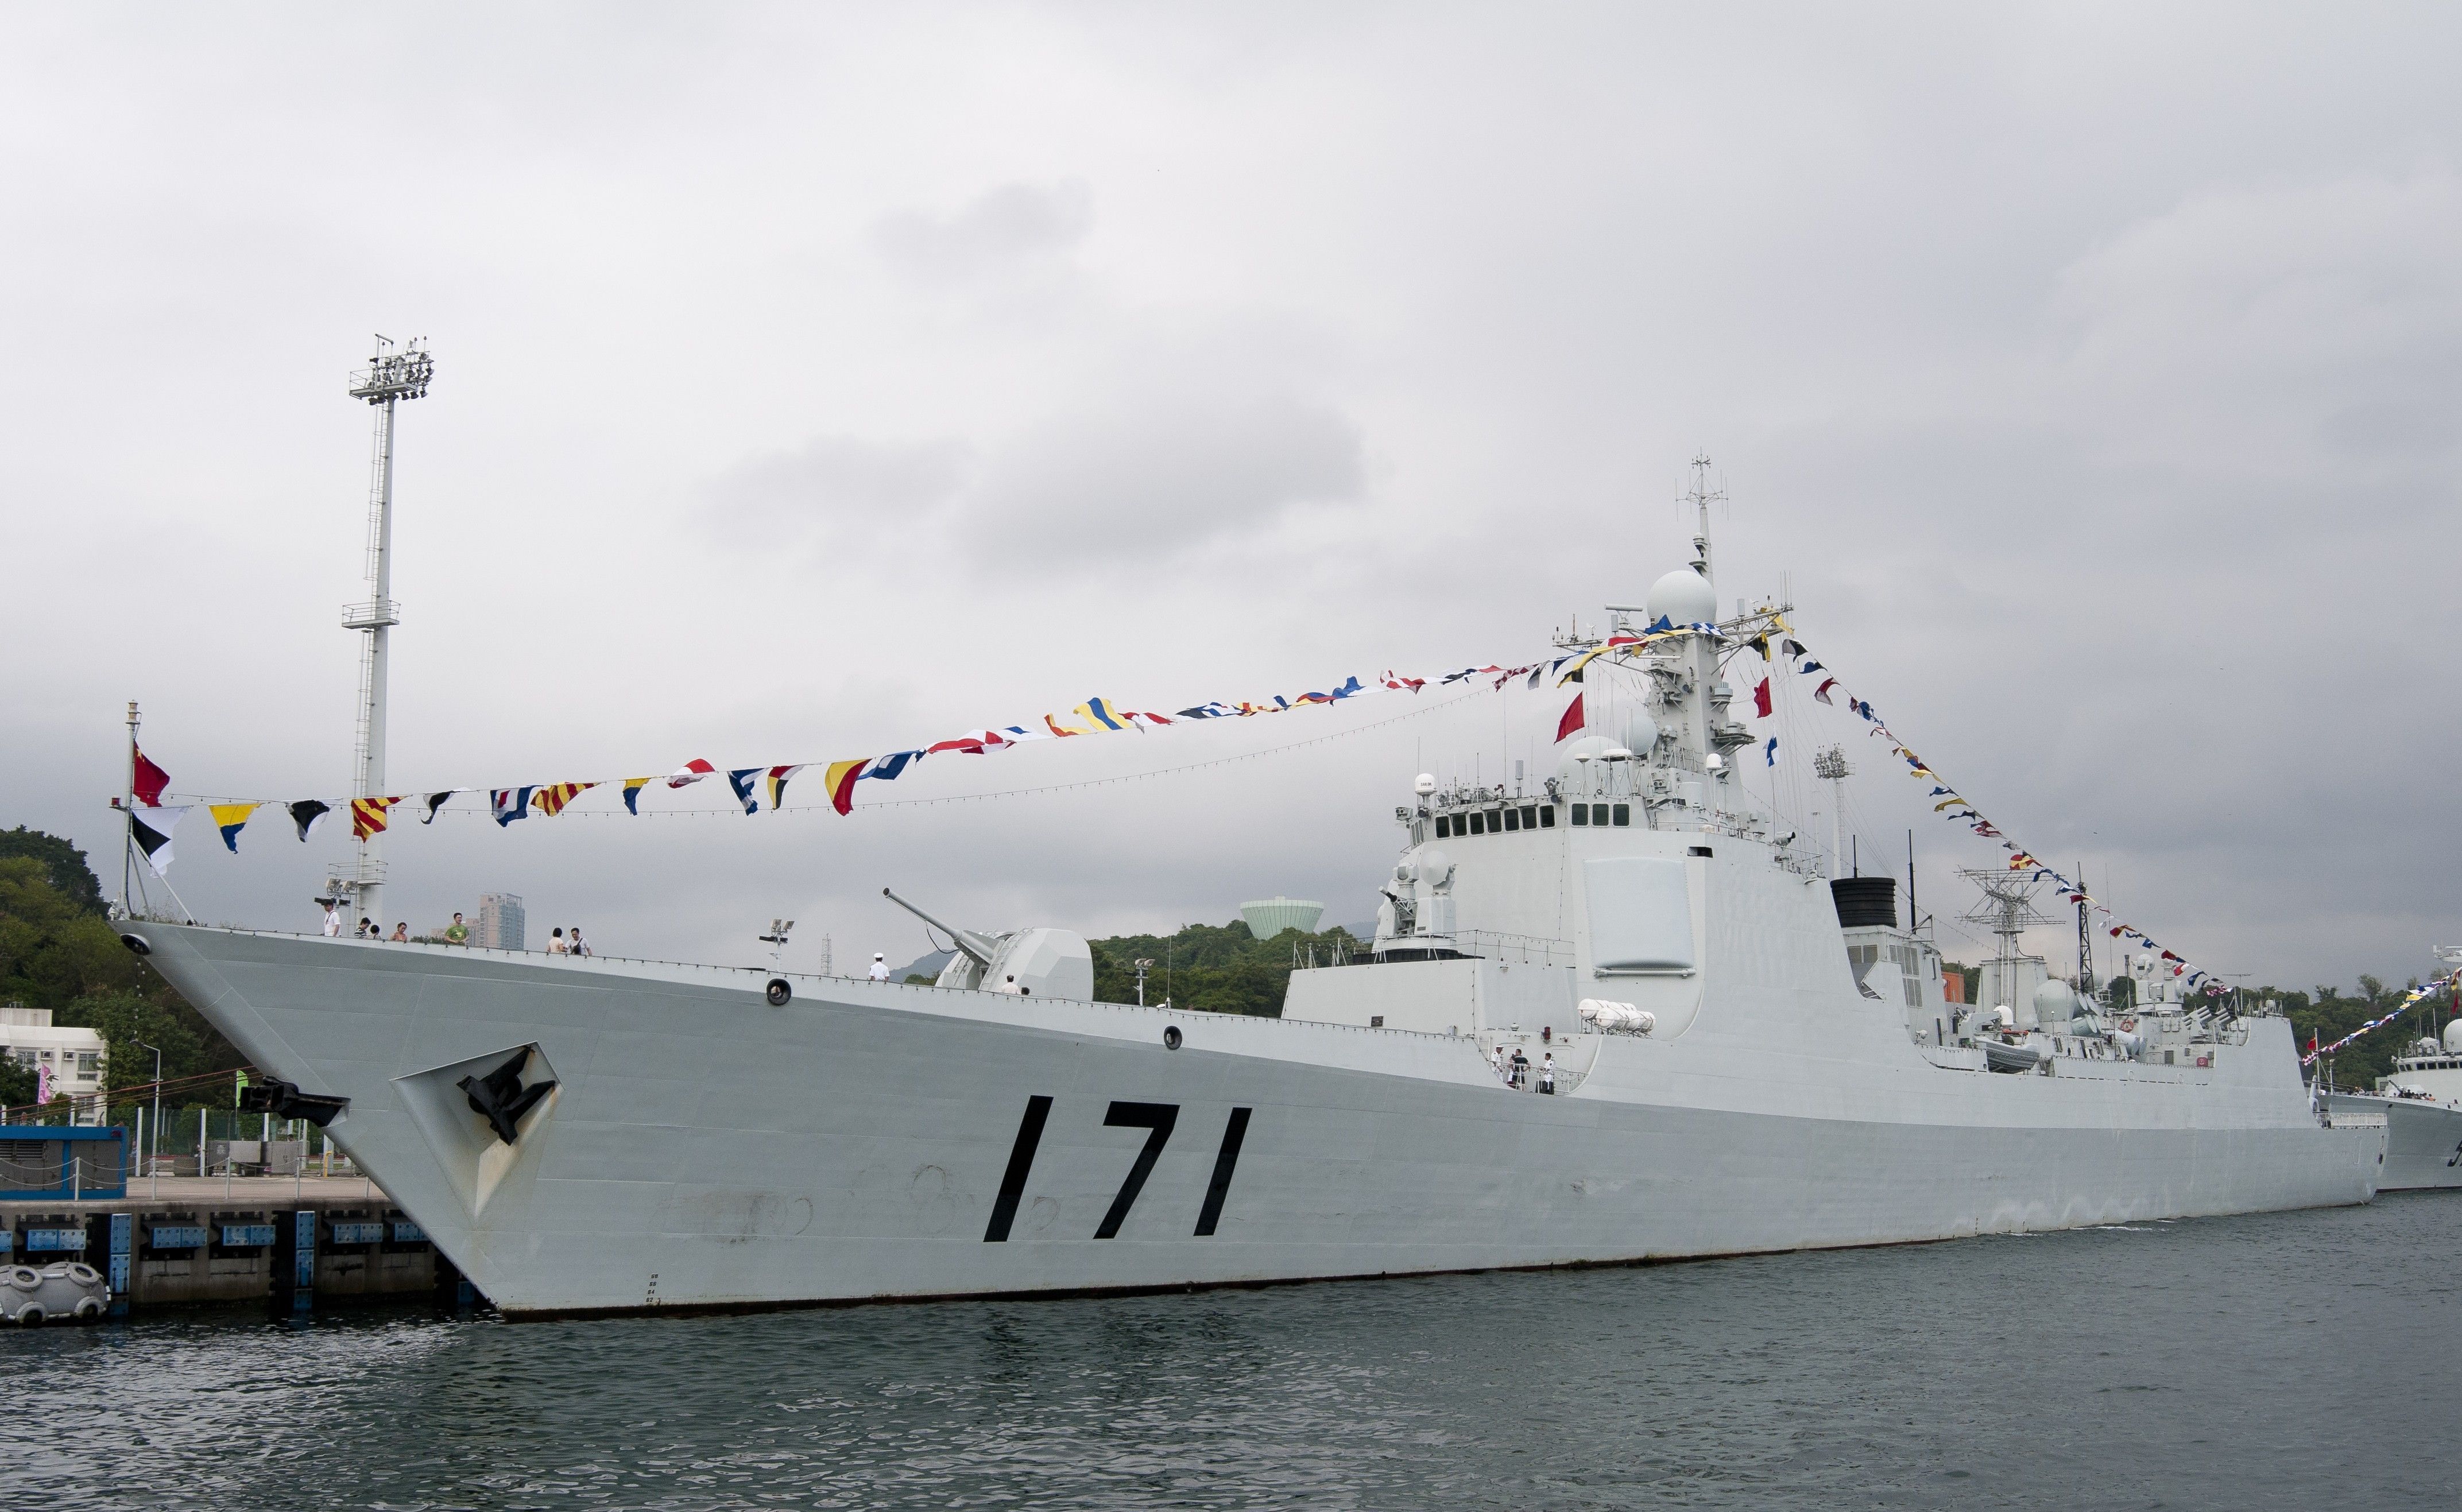 我登上了中国海军战舰-171海口舰